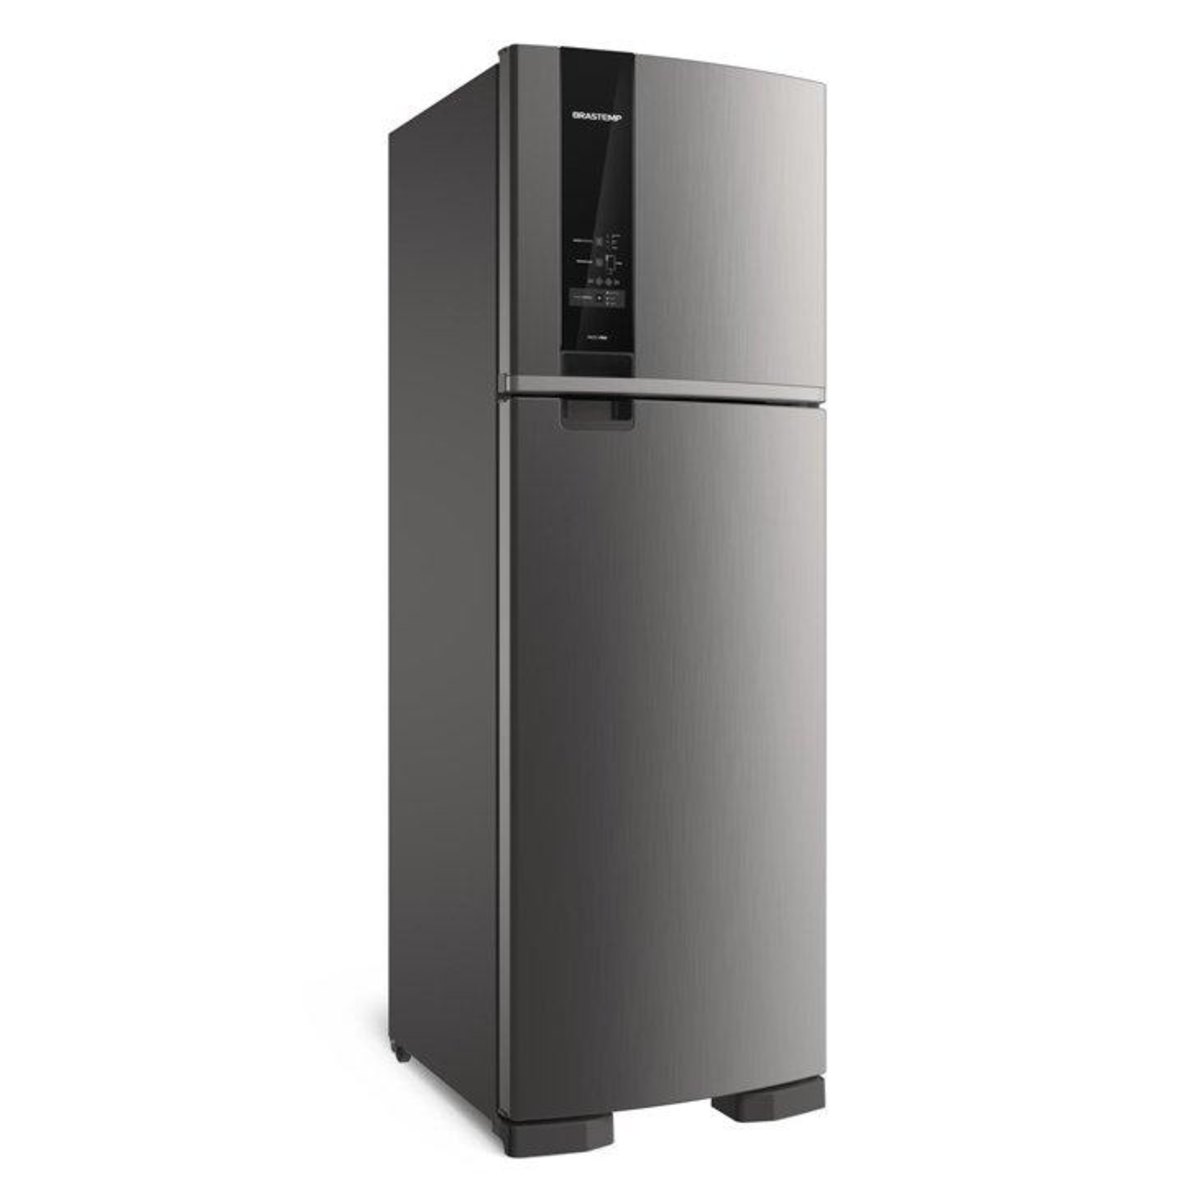 Refrigerador / Geladeira Frost Free Duplex Brastemp Brm54hk, 400 Litros